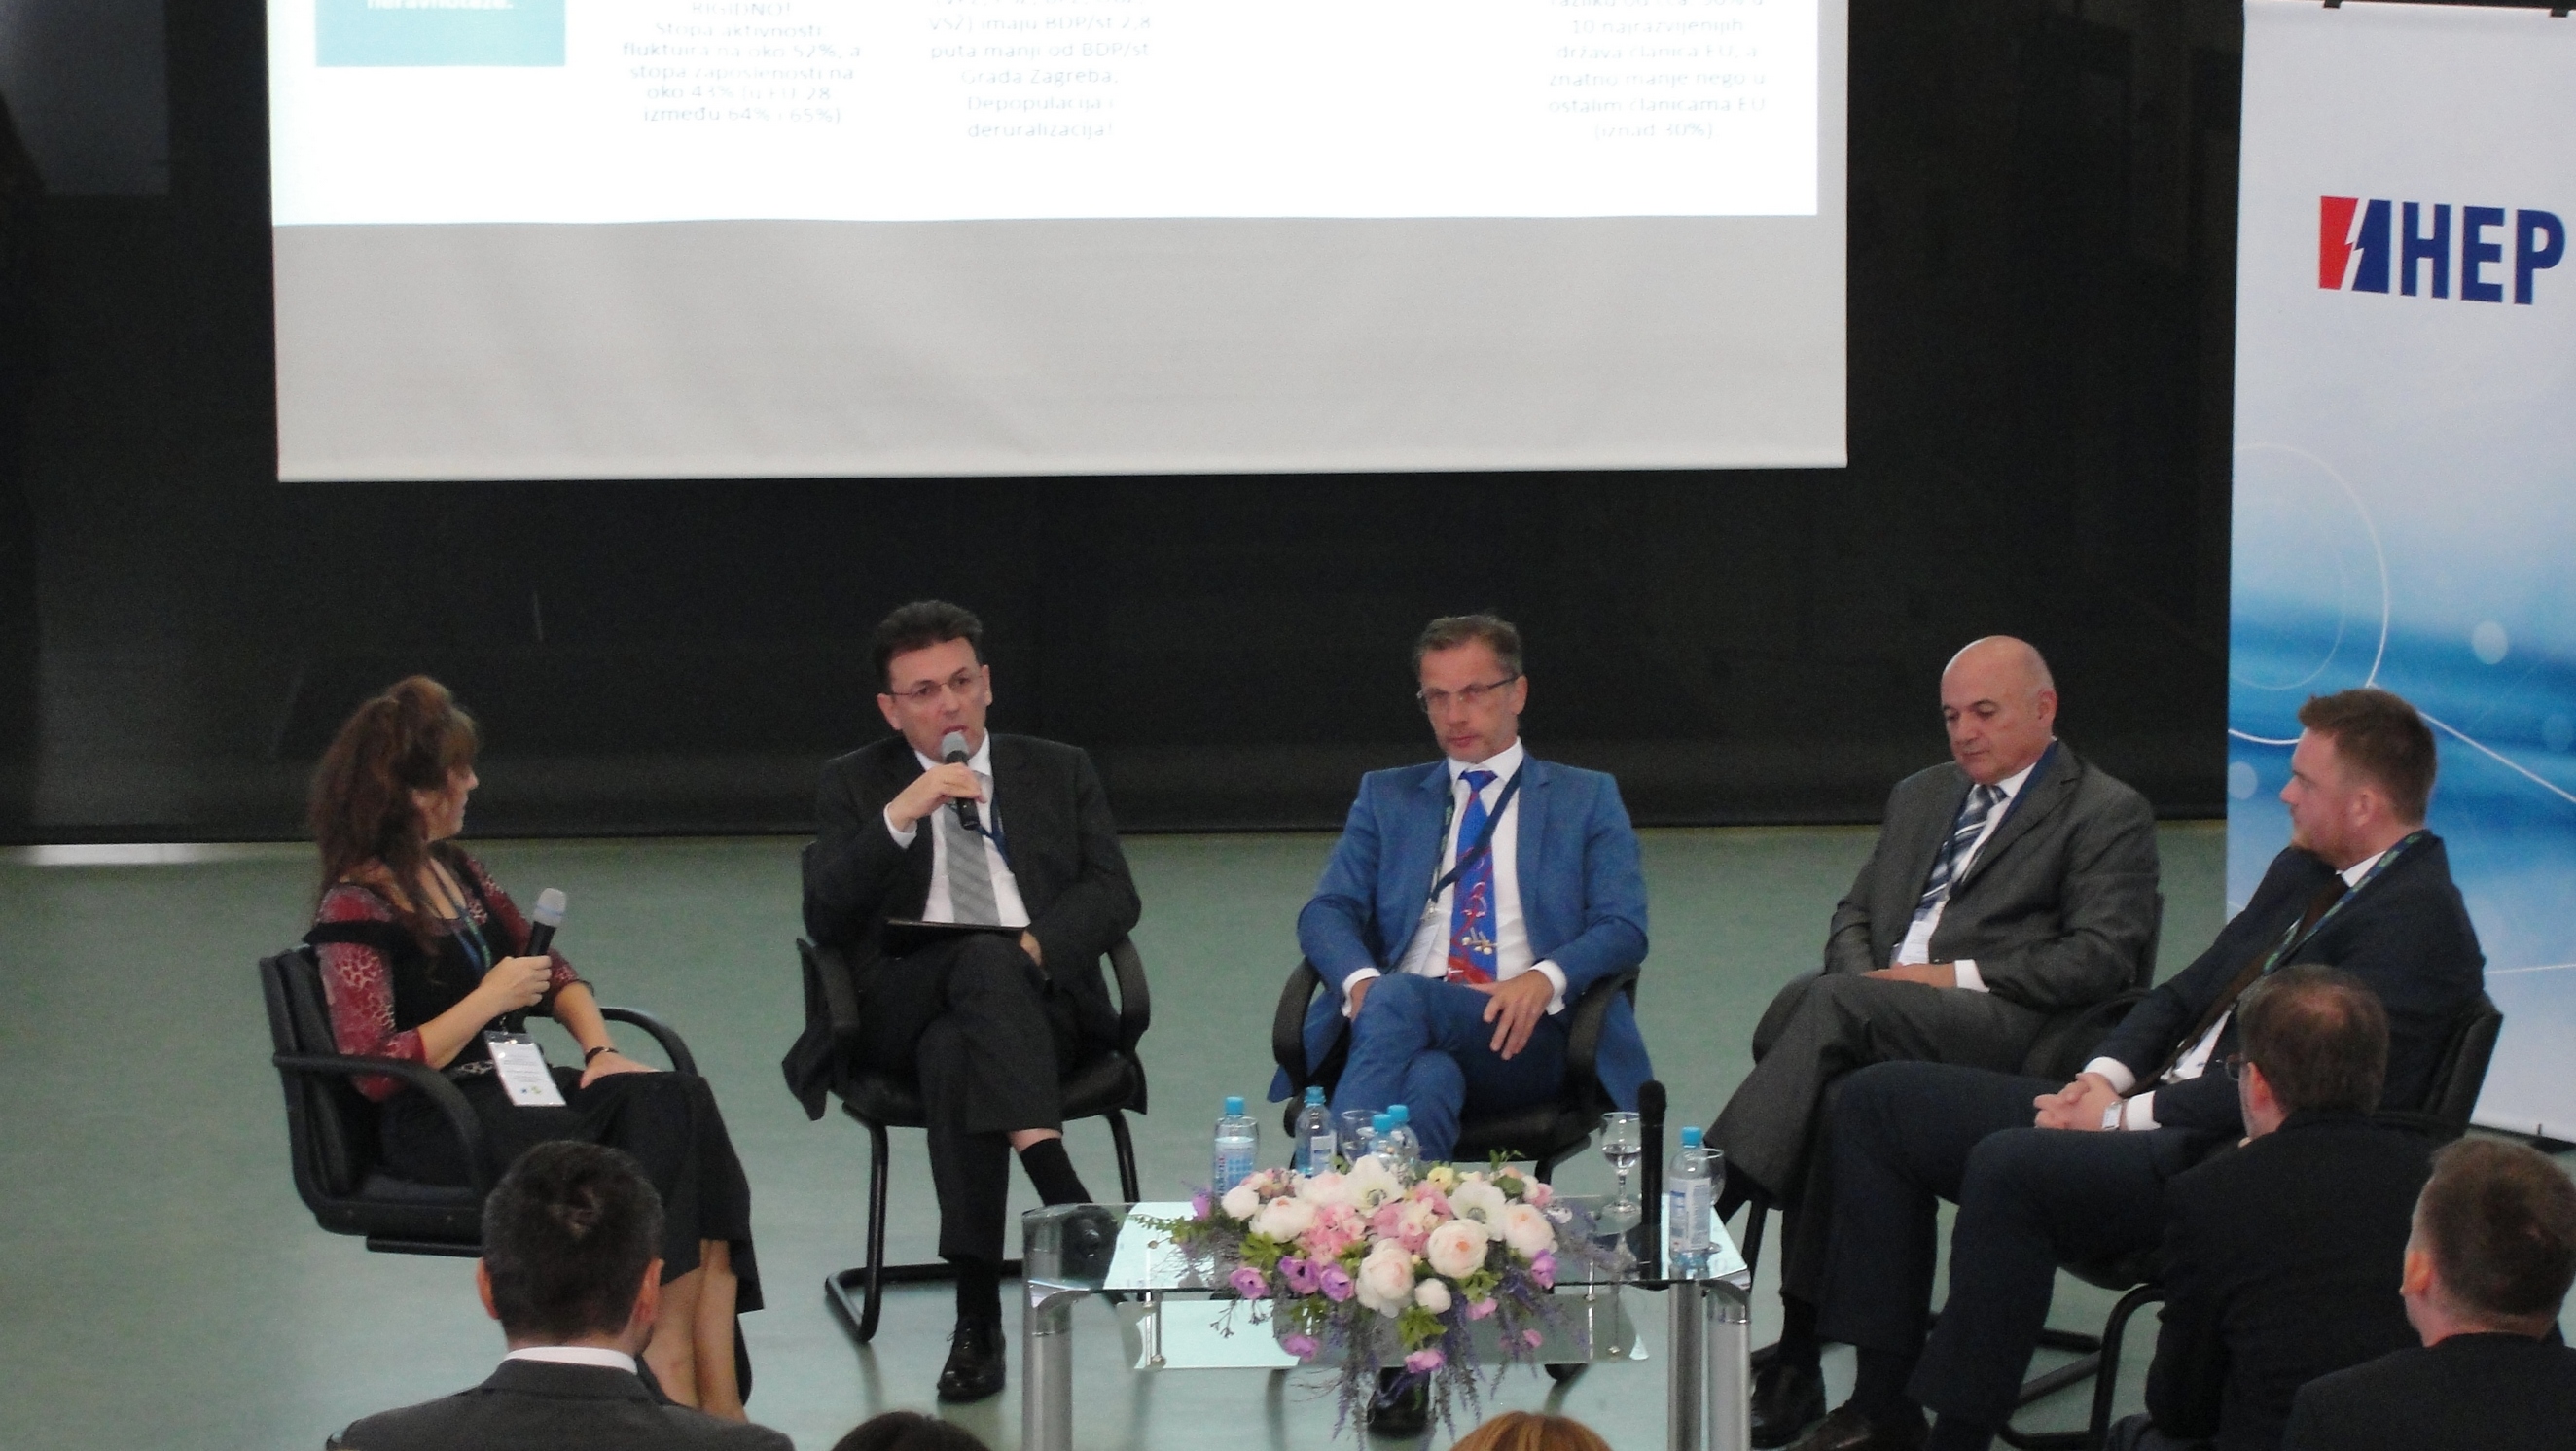 Znanstveni forum EFOS-a: Hrvatskoj dostupno 4,3 milijarde eura, a razvija se samo Zagreb